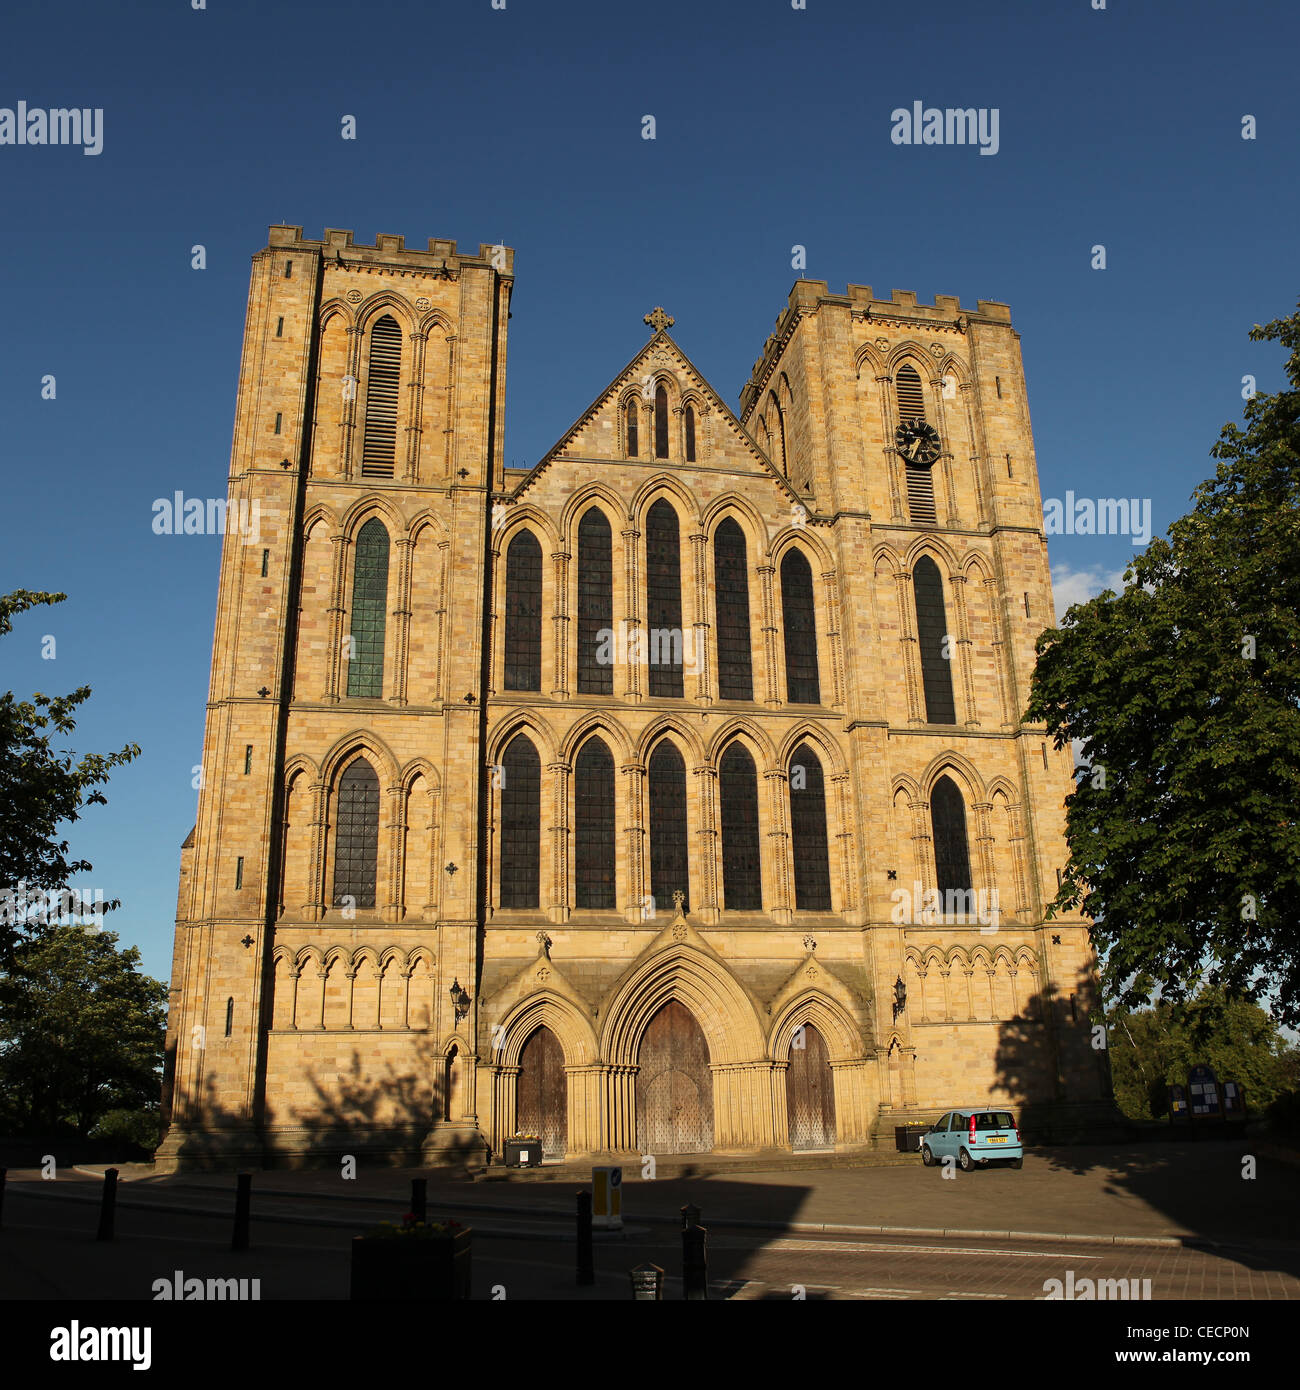 La cathédrale de Ripon Ripon, avant de l'ouest, North Yorkshire, UK Banque D'Images